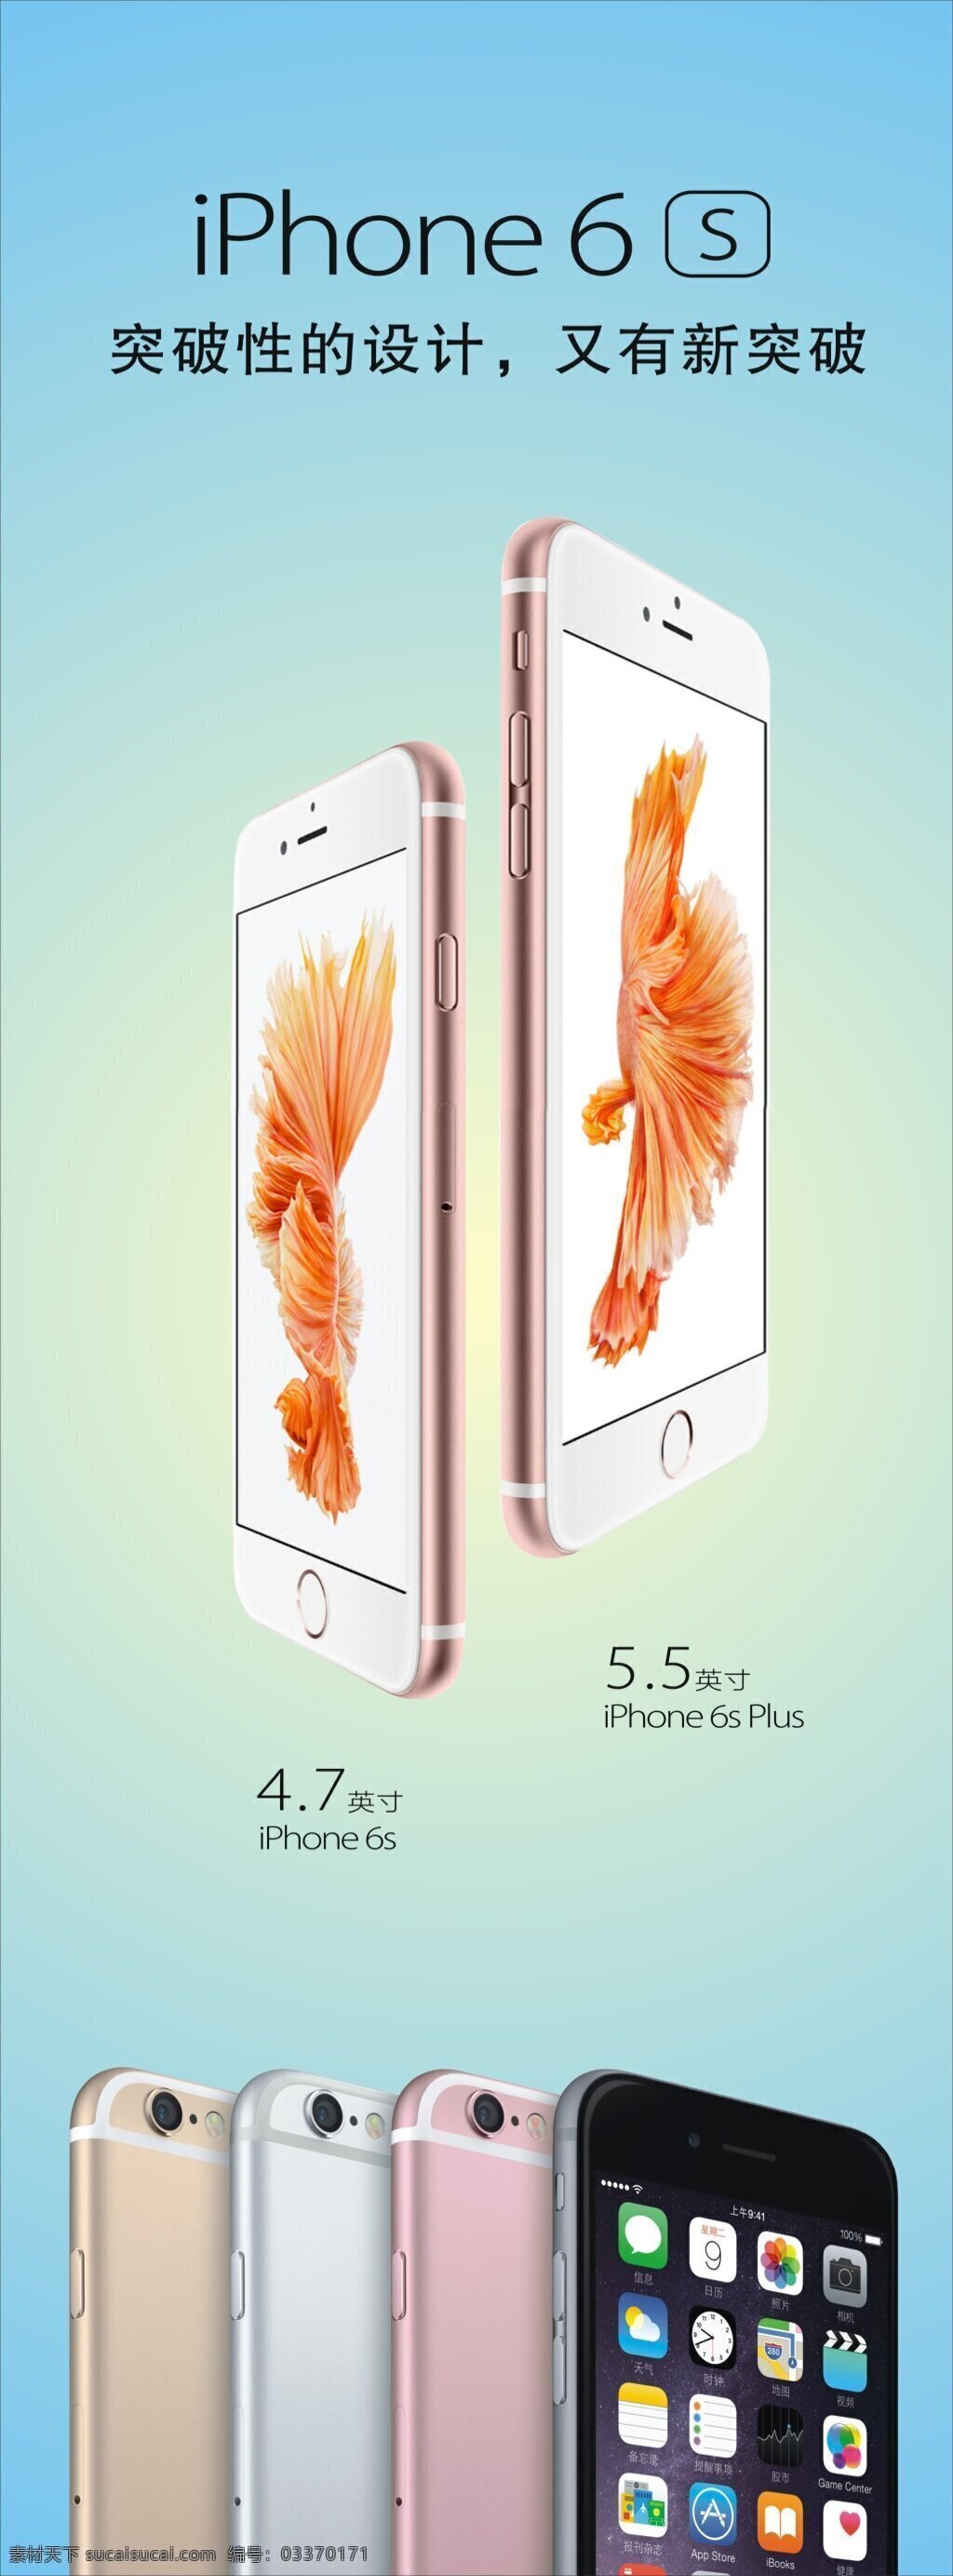 苹果6s海报 苹果6s 苹果6s宣传 苹果海报 苹果宣传海报 白色